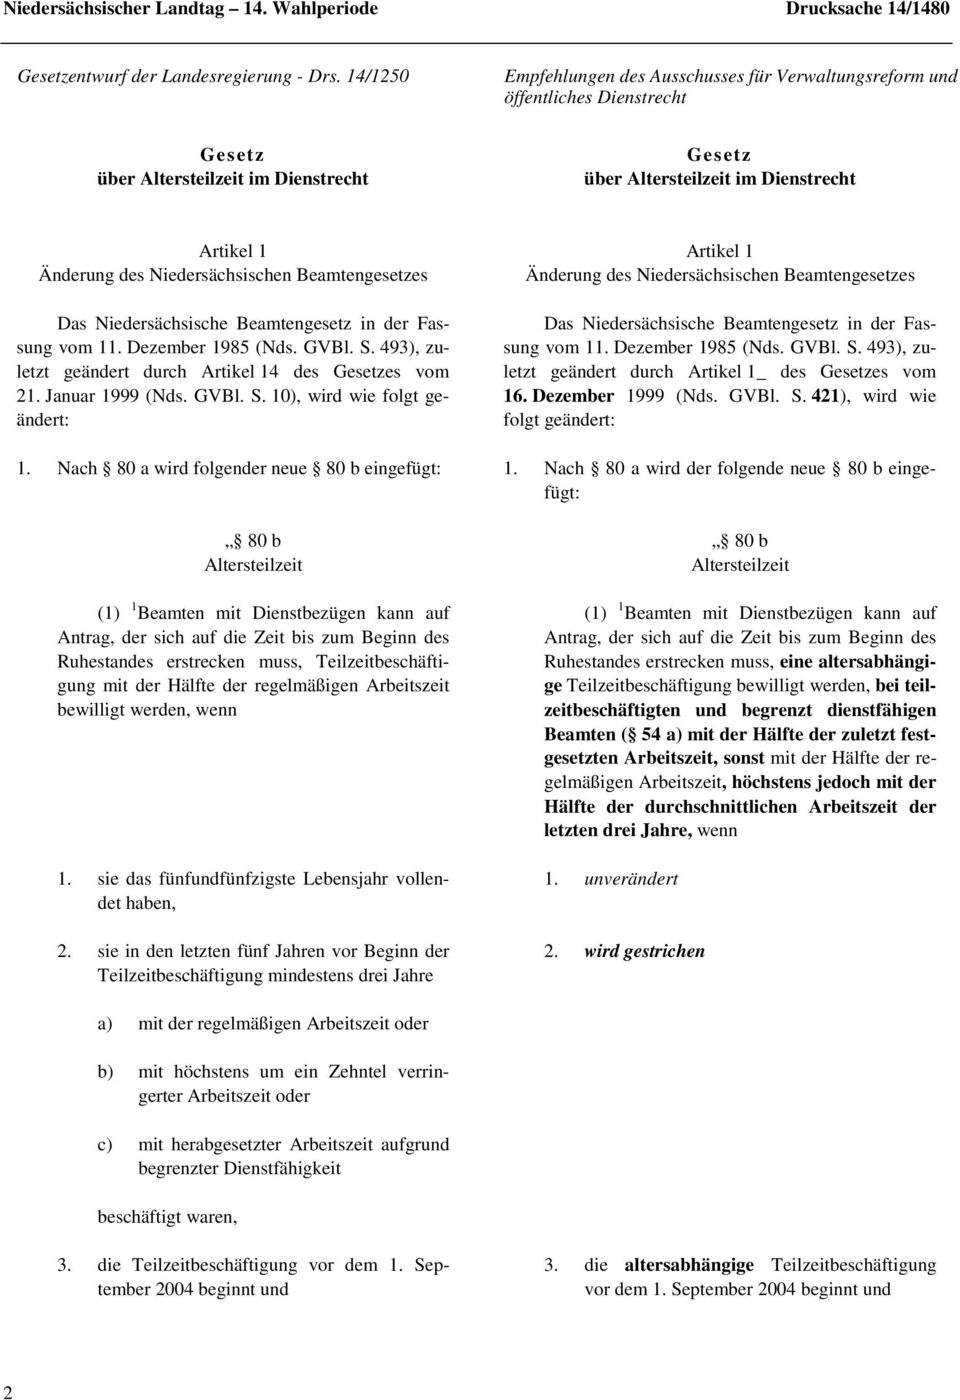 Beamtengesetz in der Fassung vom 11. Dezember 1985 (Nds. GVBl. S. 493), zuletzt geändert durch Artikel 14 des Gesetzes vom 21. Januar 1999 (Nds. GVBl. S. 10), wird wie folgt geändert: Das Niedersächsische Beamtengesetz in der Fassung vom 11.